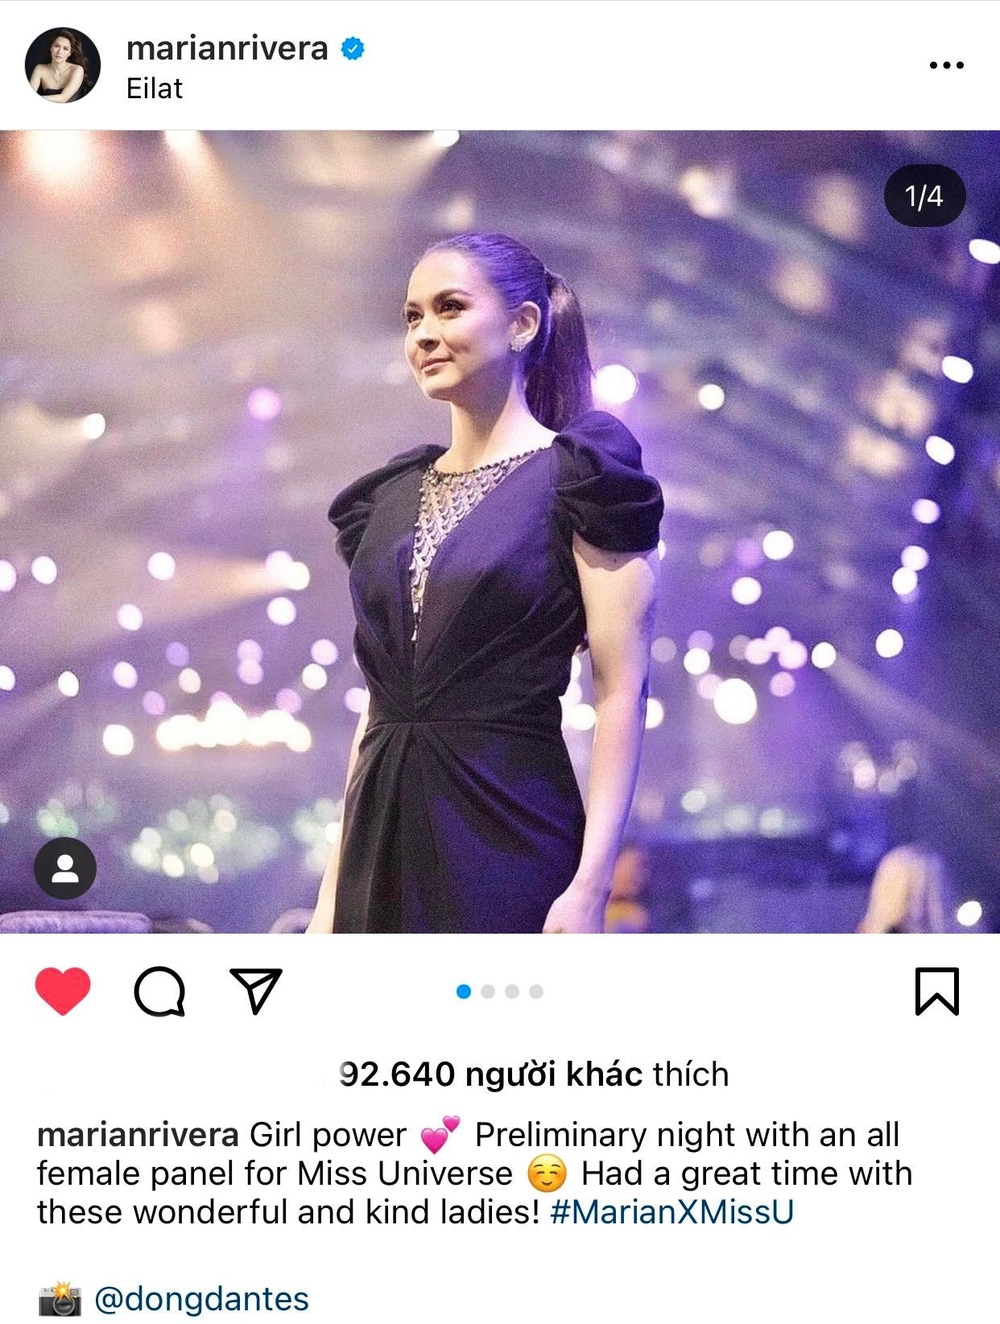  
Chia sẻ mới của mỹ nhân Philippines sau đêm bán kết Miss Universe. (Ảnh: Chụp màn hình Instagram marianrivera)